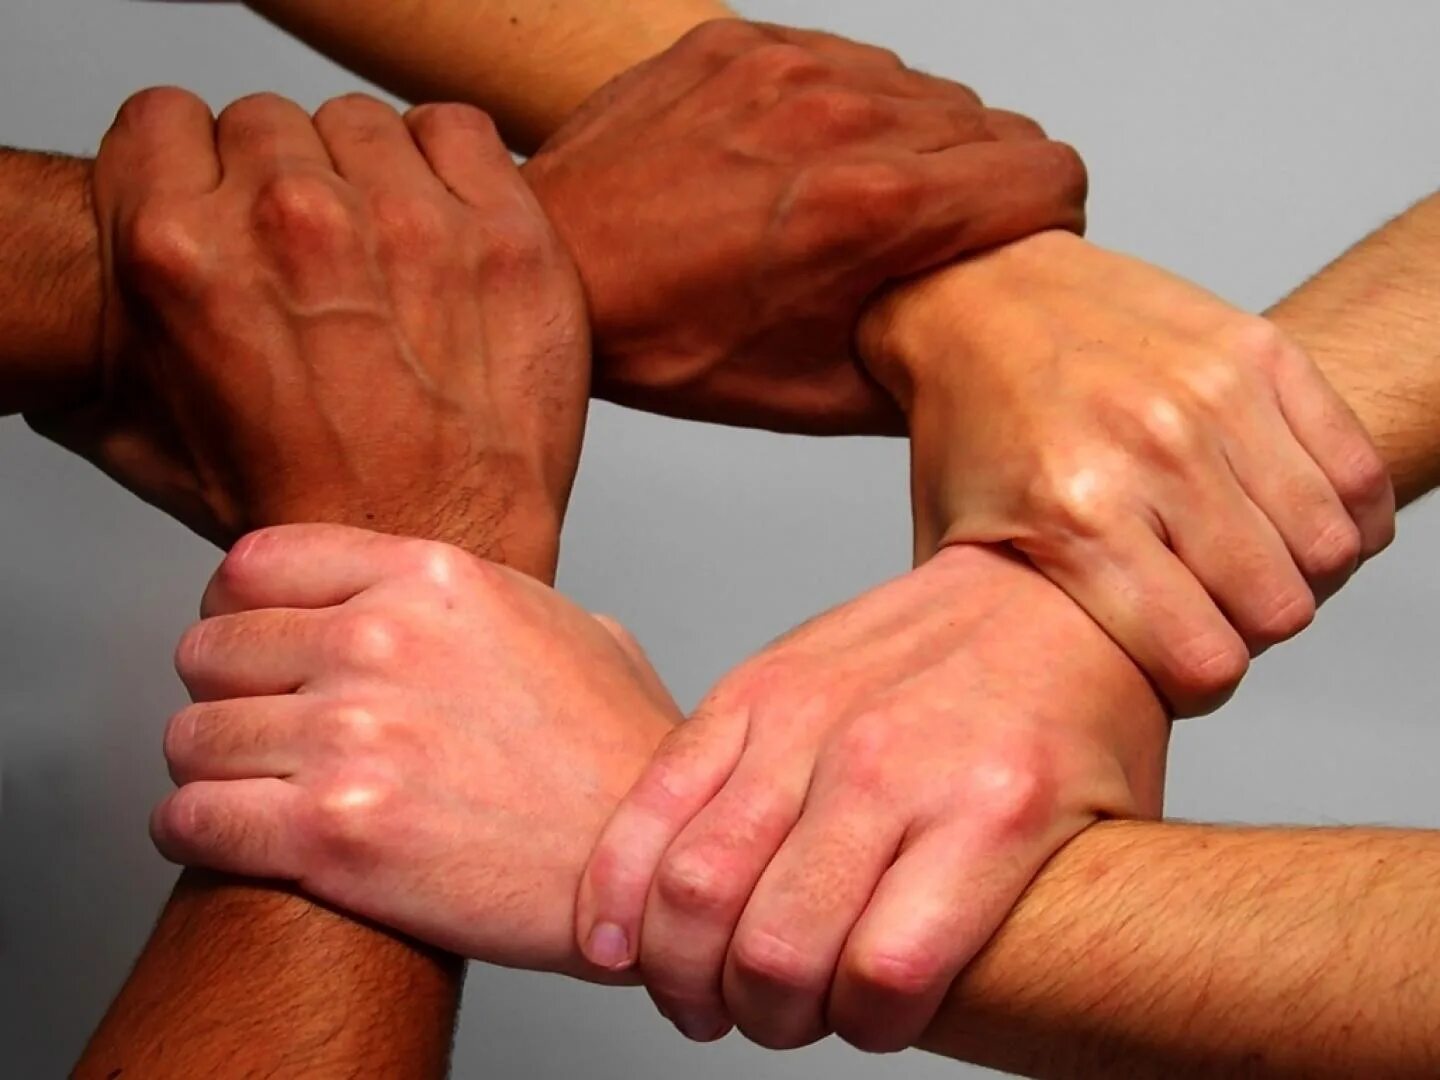 Рукопожатие было не долгое но крепкое. День сотрудничества Юг-Юг организации Объединенных наций. День сотрудничества Юг-Юг ООН 12 сентября. Дружеское рукопожатие. Крепкое рукопожатие.